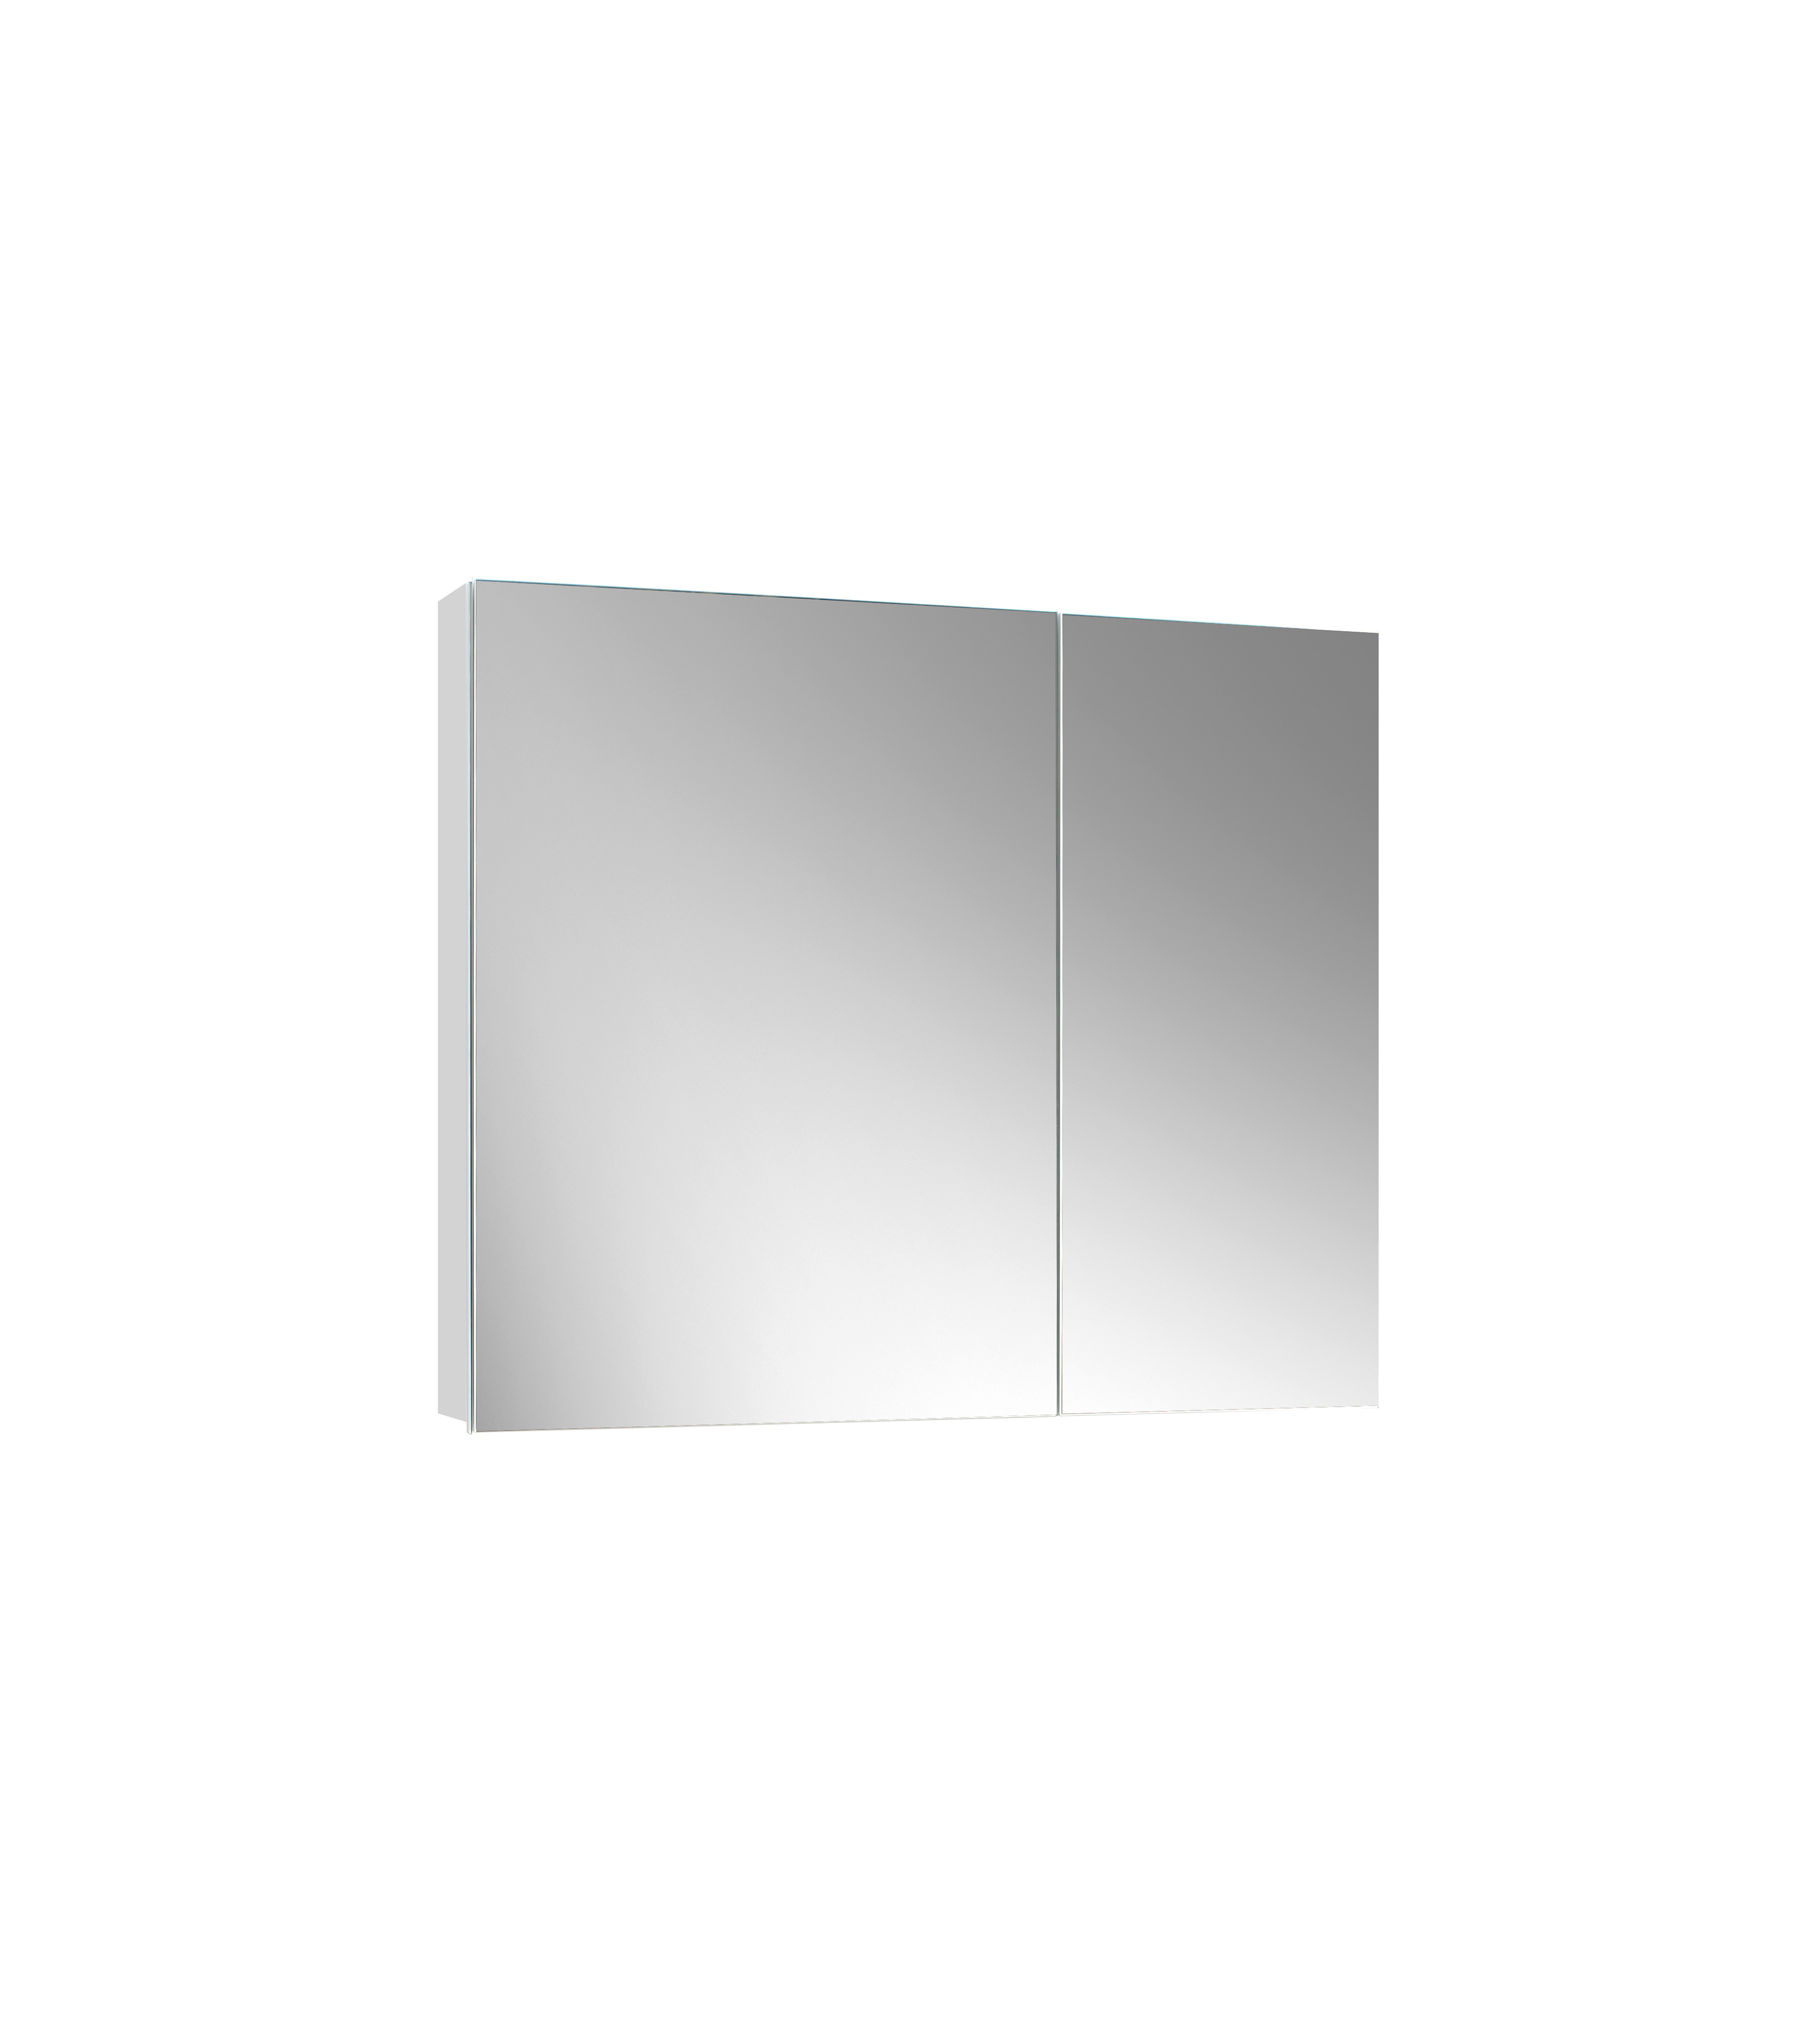 Шкаф навесной зеркальный Триумф ВШ 80,белый глянцевый (1)